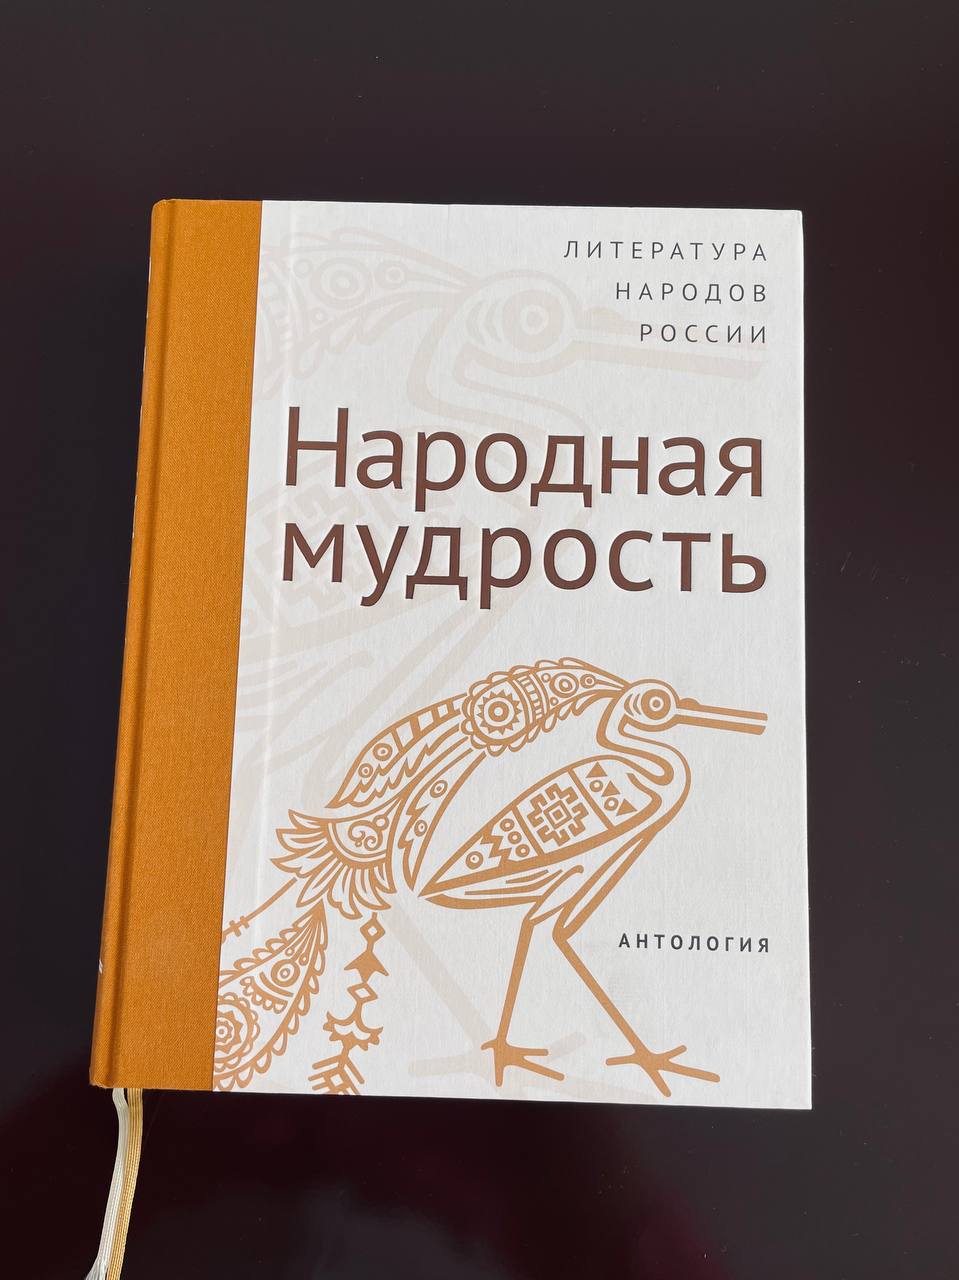 Фольклорные произведения карачаевцев, черкесов, абазин и ногайцев вошли в новую Антологию литературы народов России